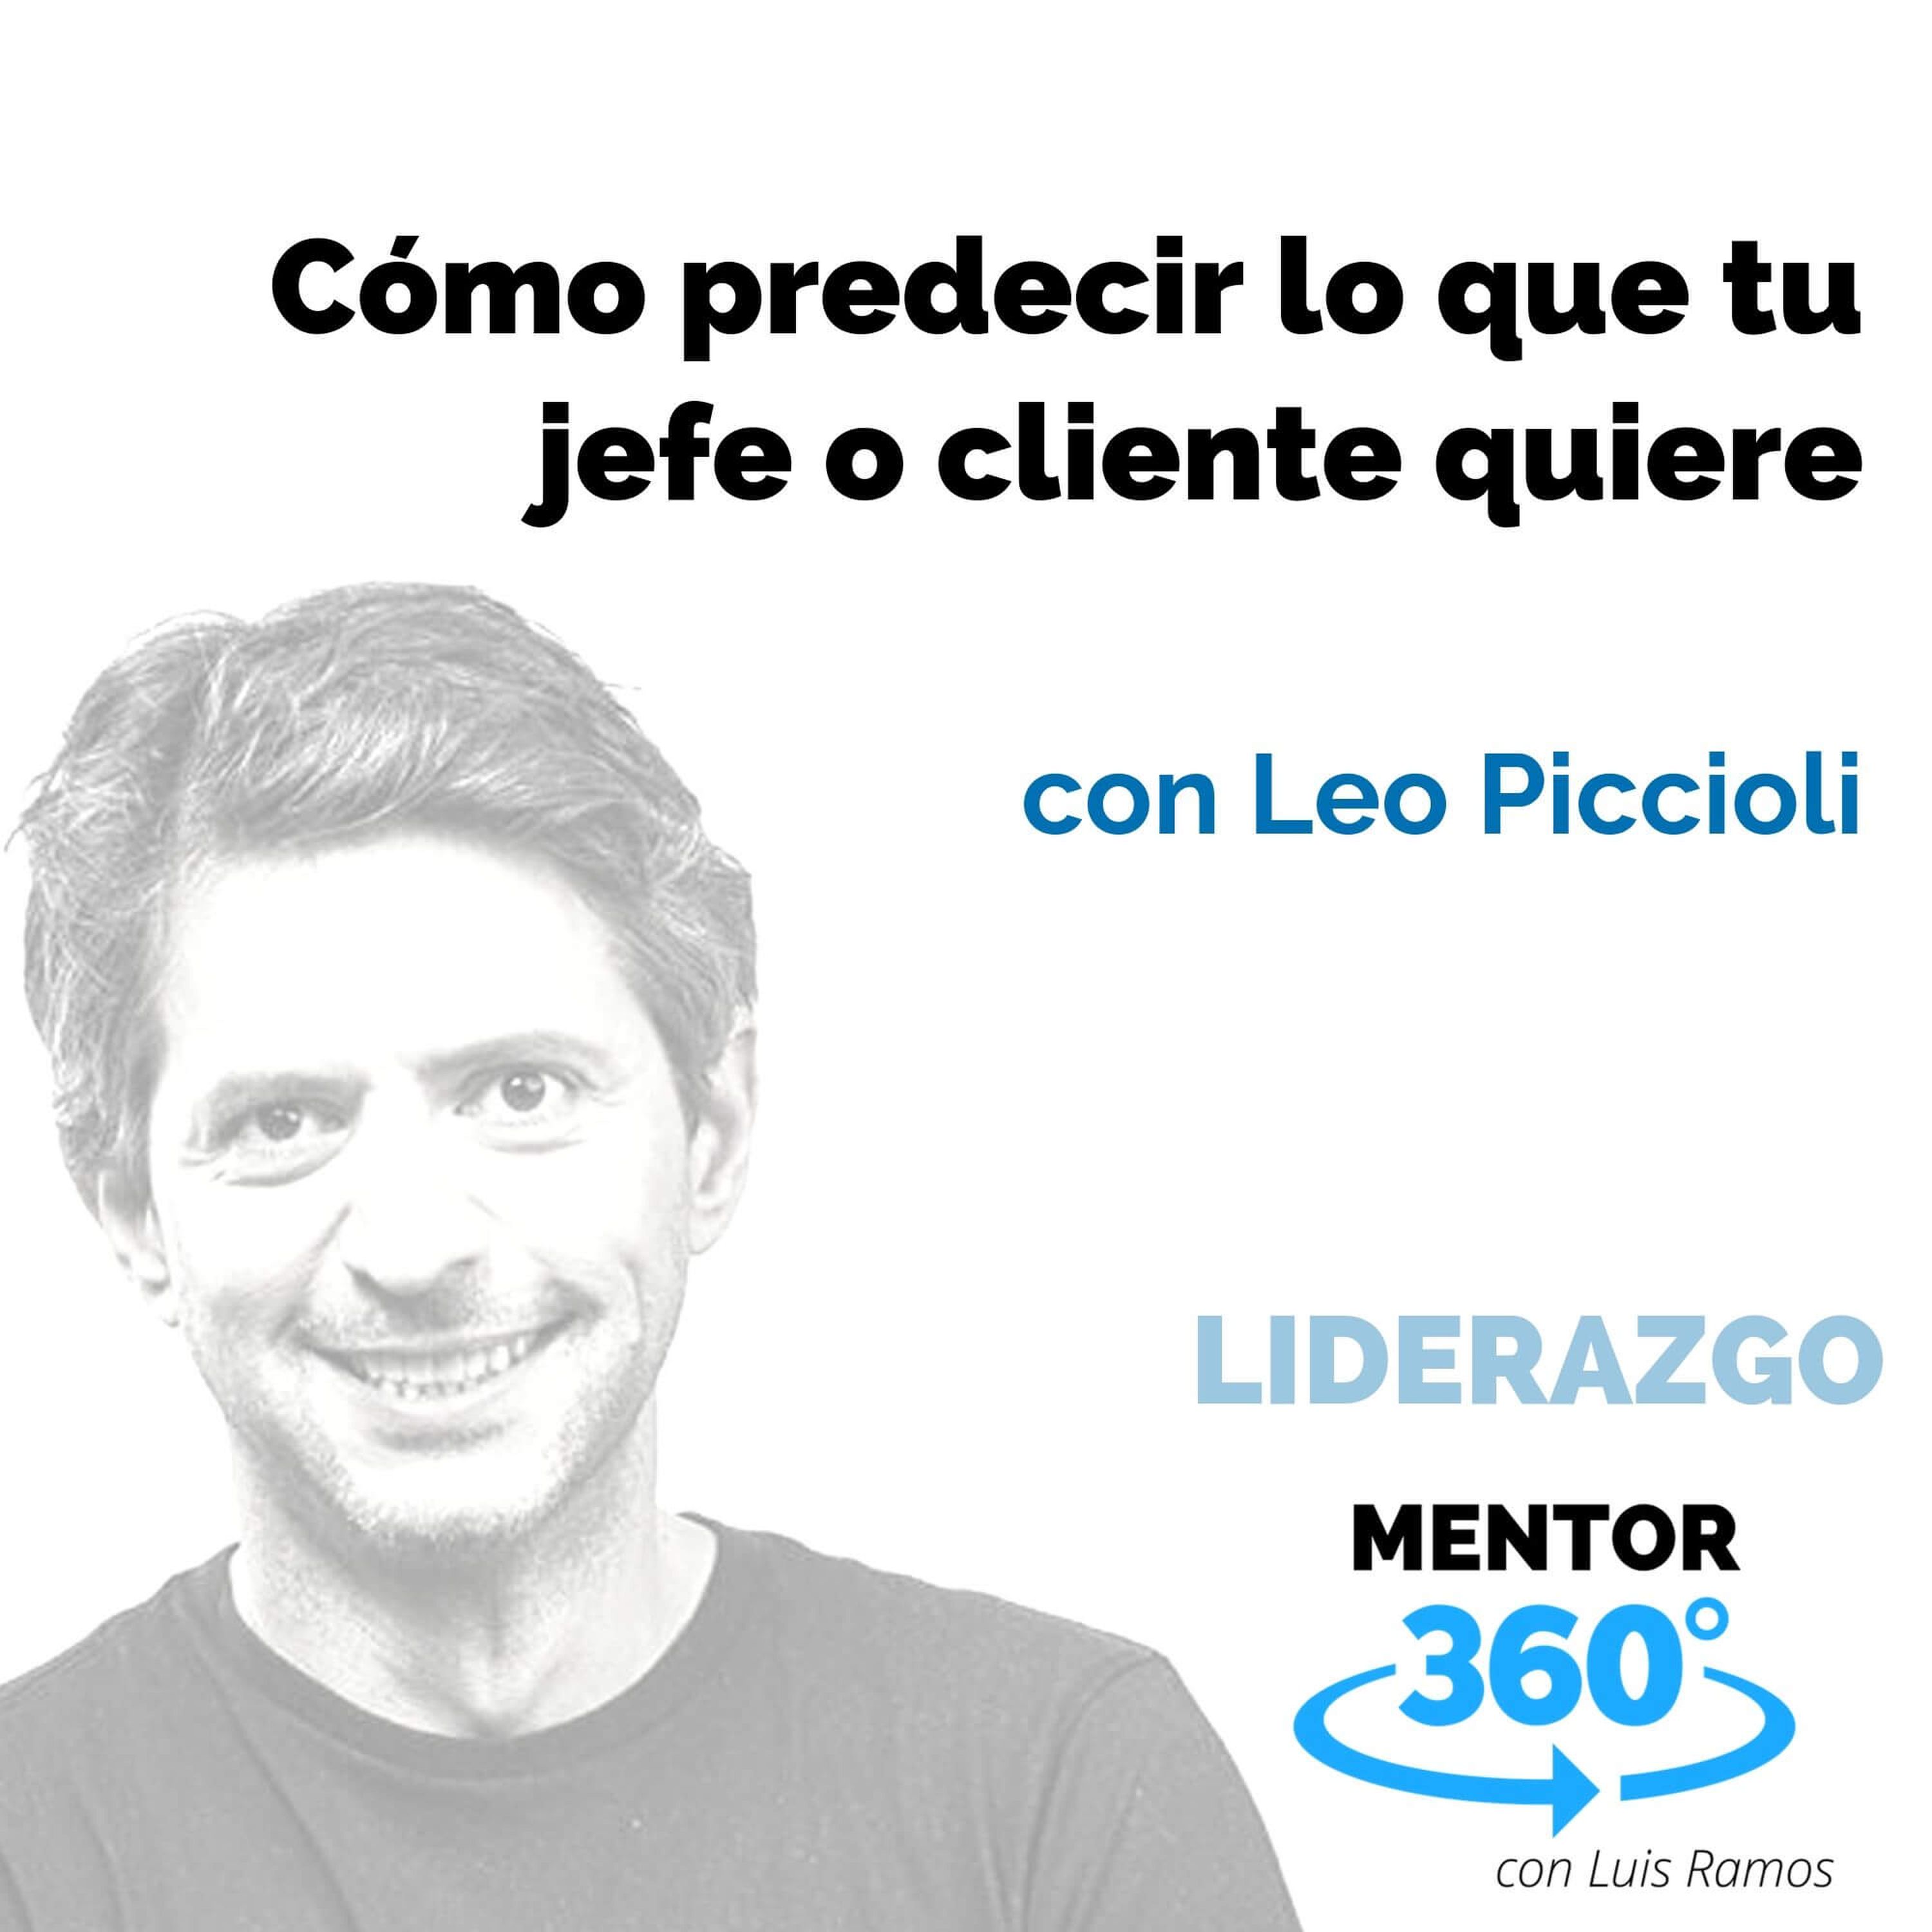 Cómo predecir lo que tu jefe o cliente quiere, con Leo Piccioli - LIDERAZGO